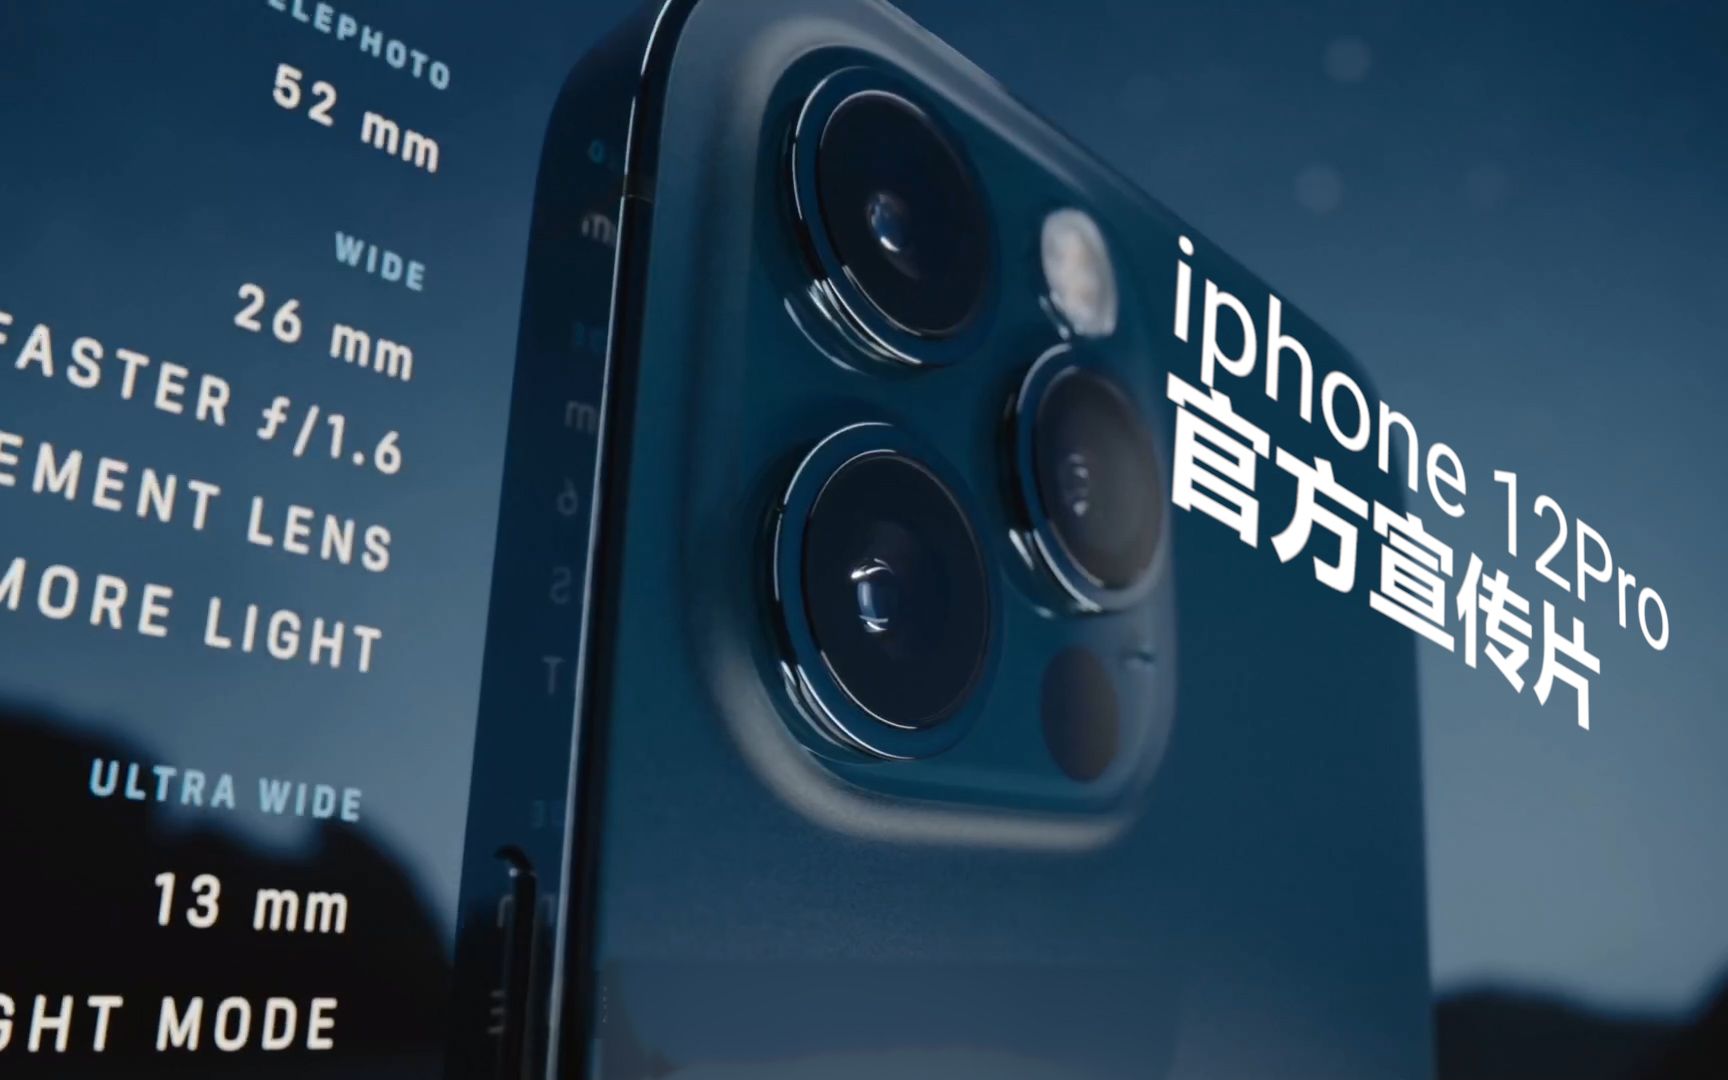 iphone 12pro/max 官方宣传片